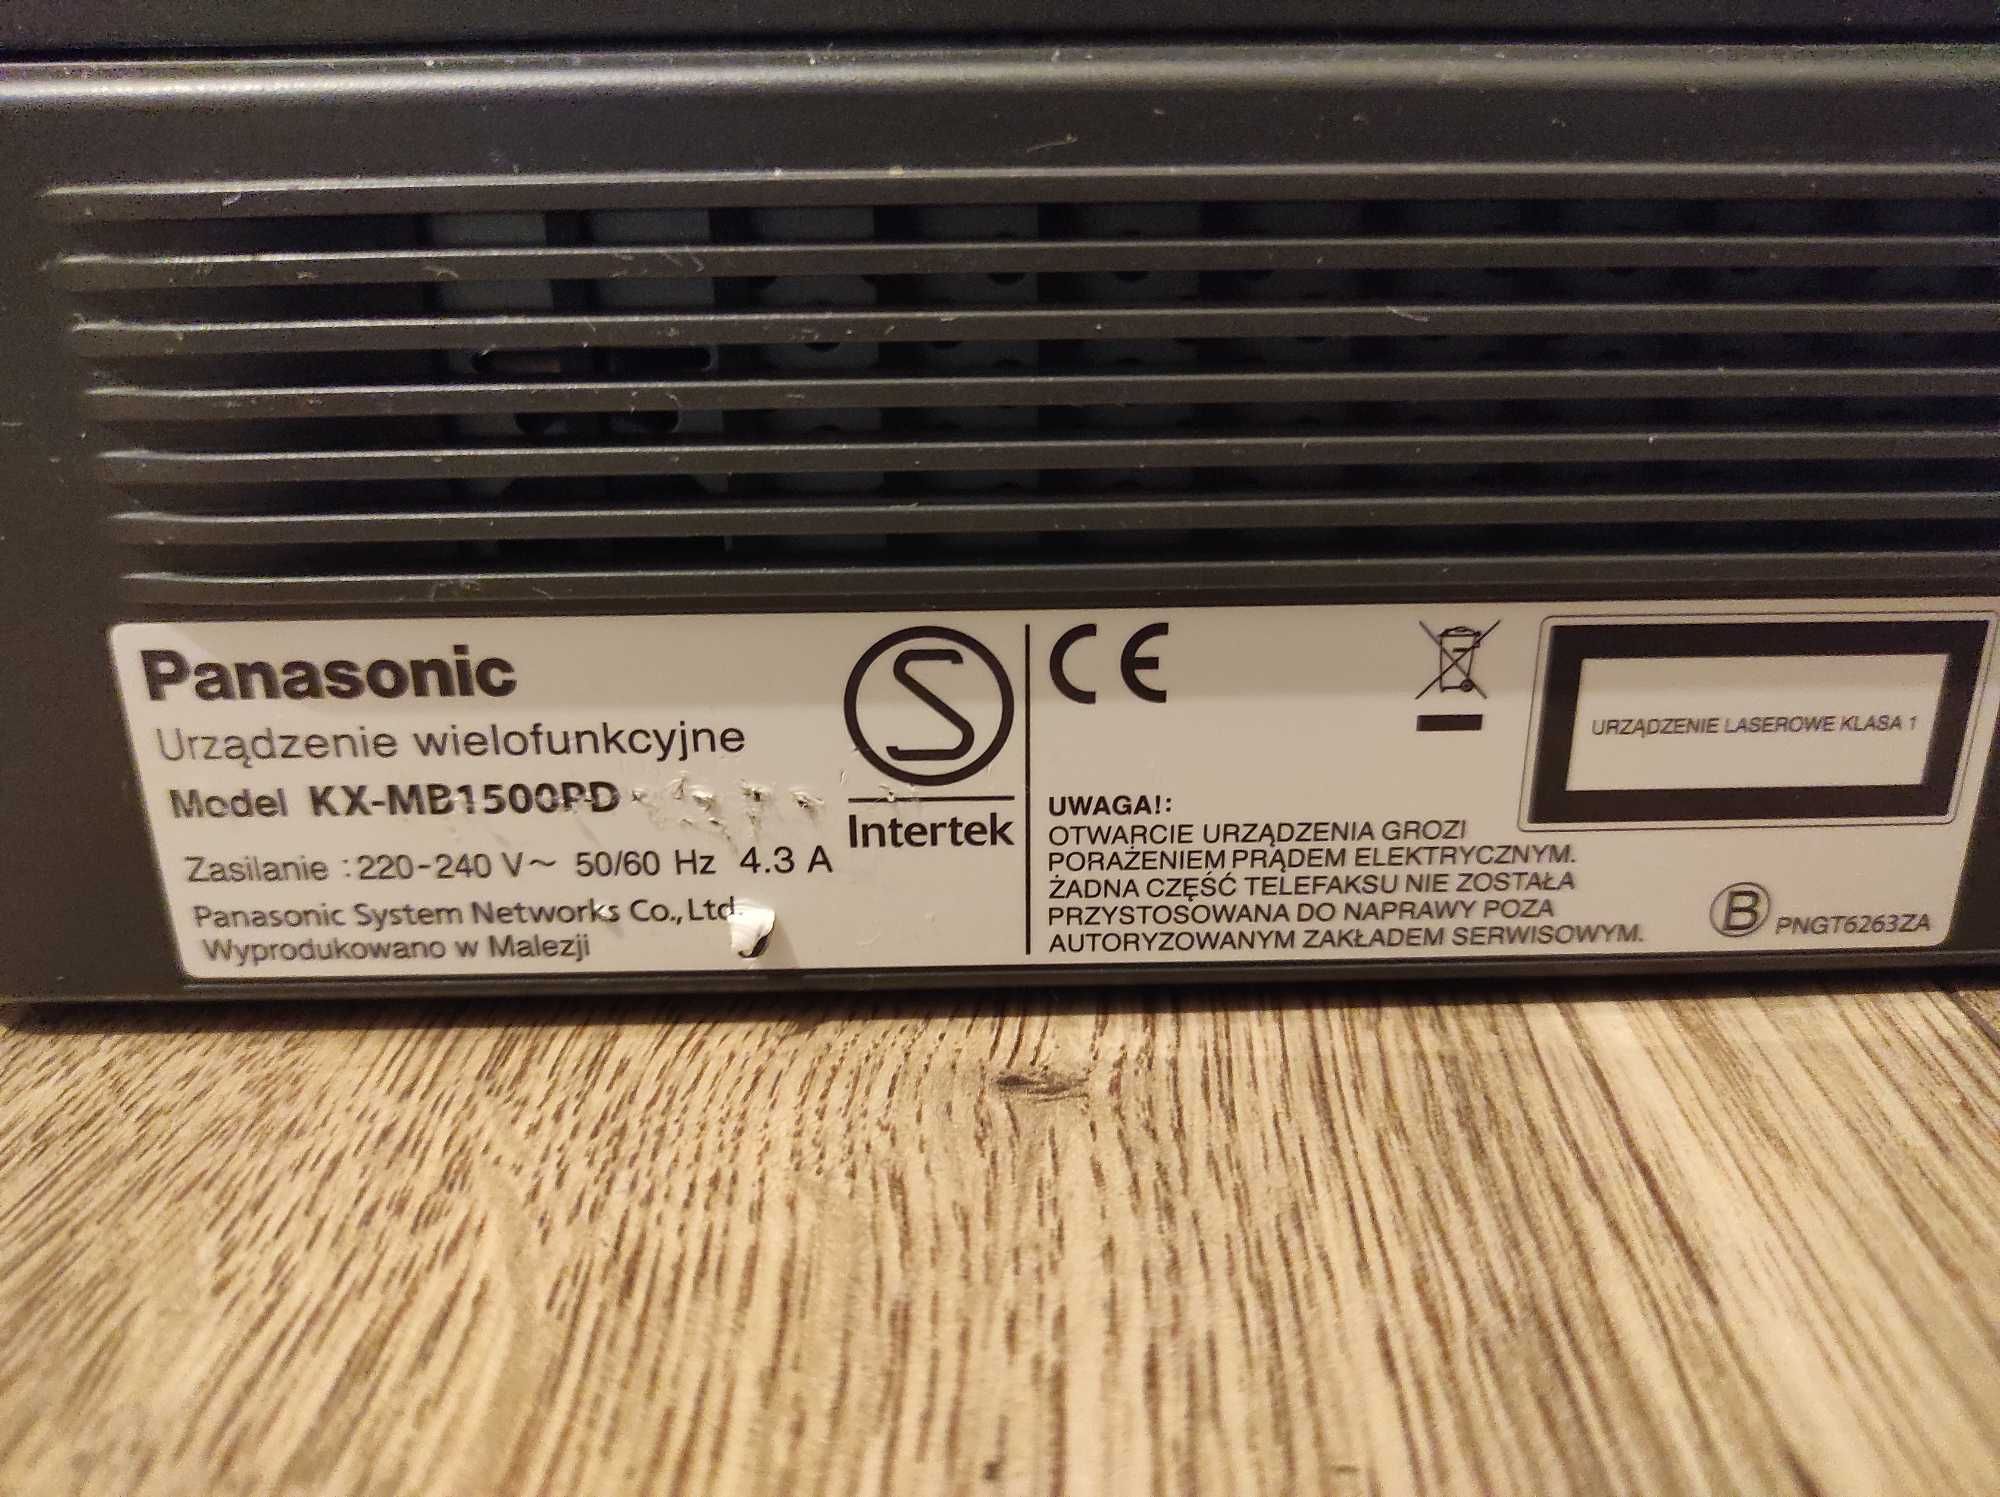 Panasonic KX-MB1500 laserowe urządzenie wielofunkcyjne